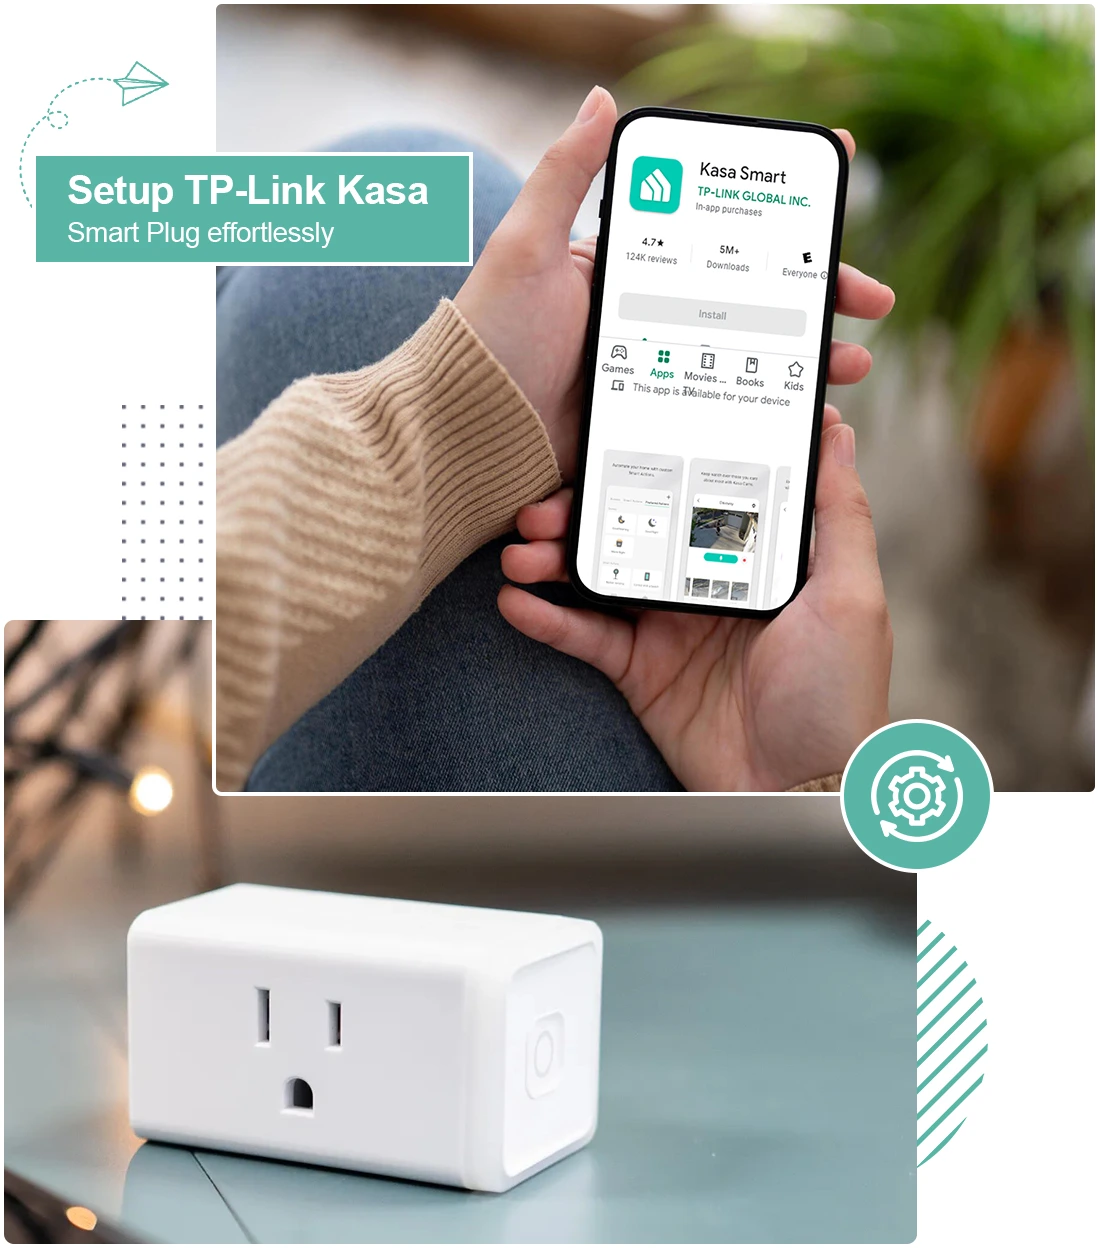 How to Setup TP-Link Kasa Smart Plug effortlessly